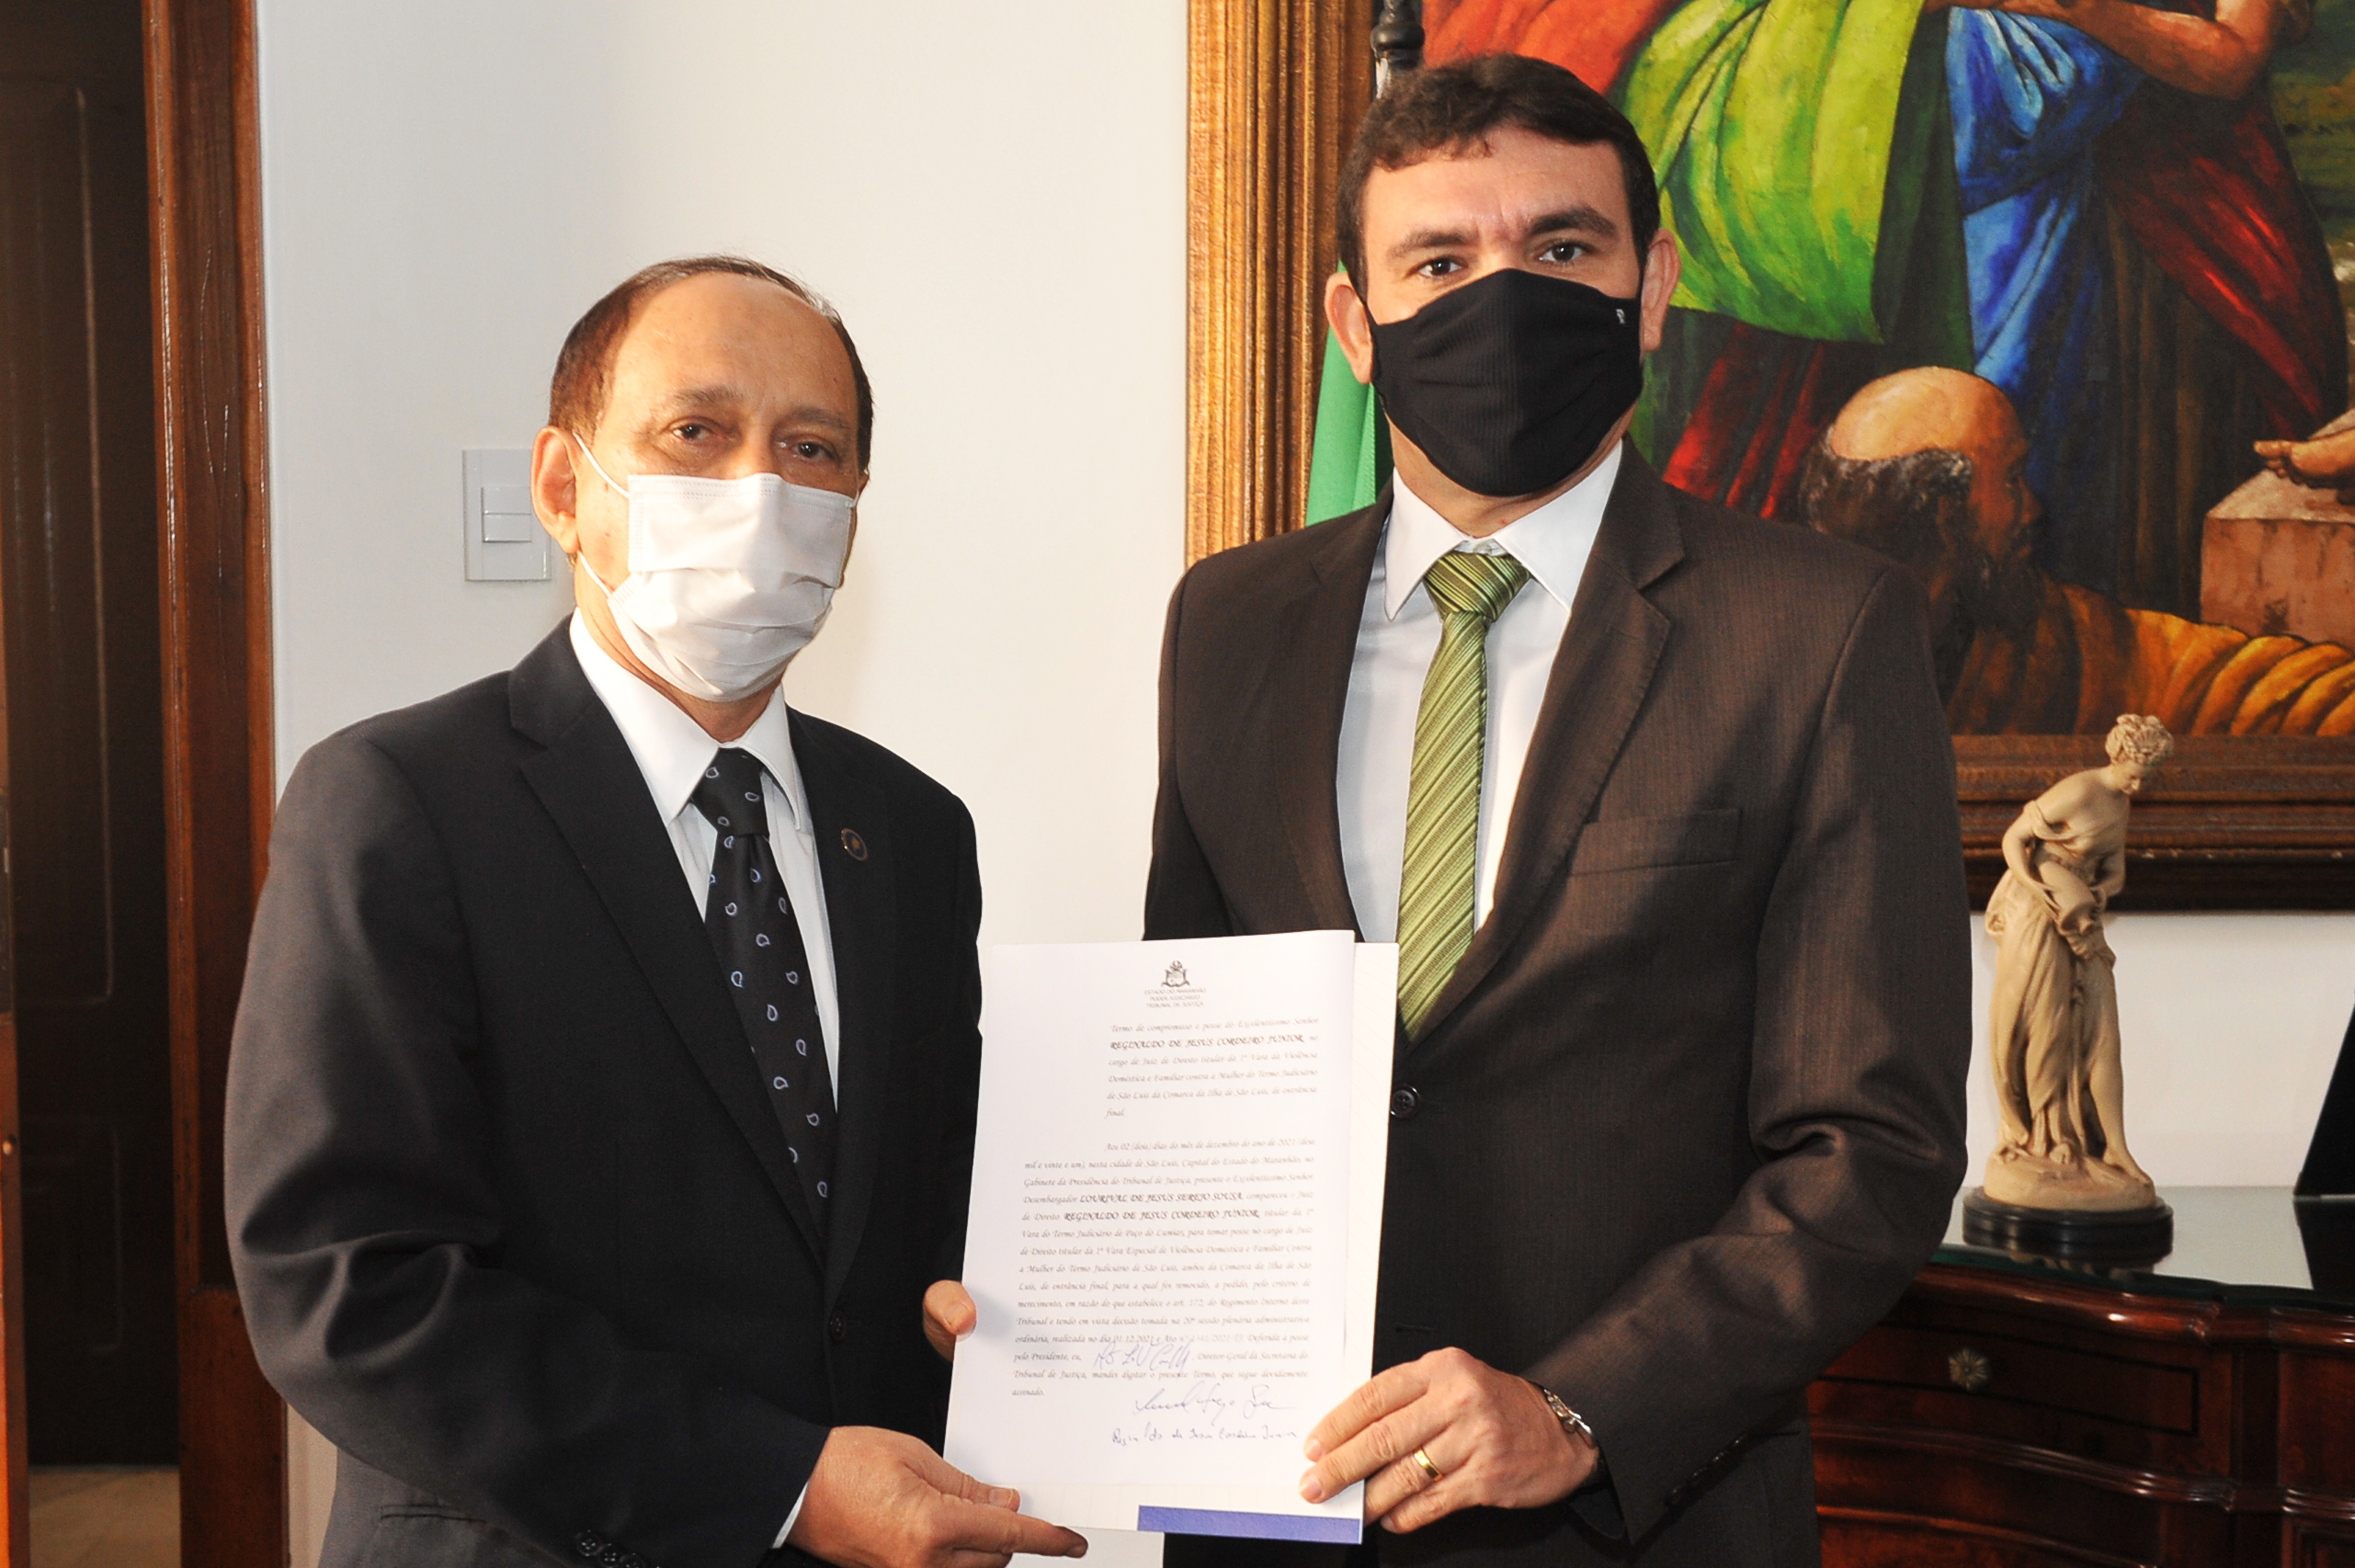 Foto colorida do presidente do TJMA, desembargador Lourival Serejo entregando o Termo de Compromisso e Posse nas mãos do juiz empossado.